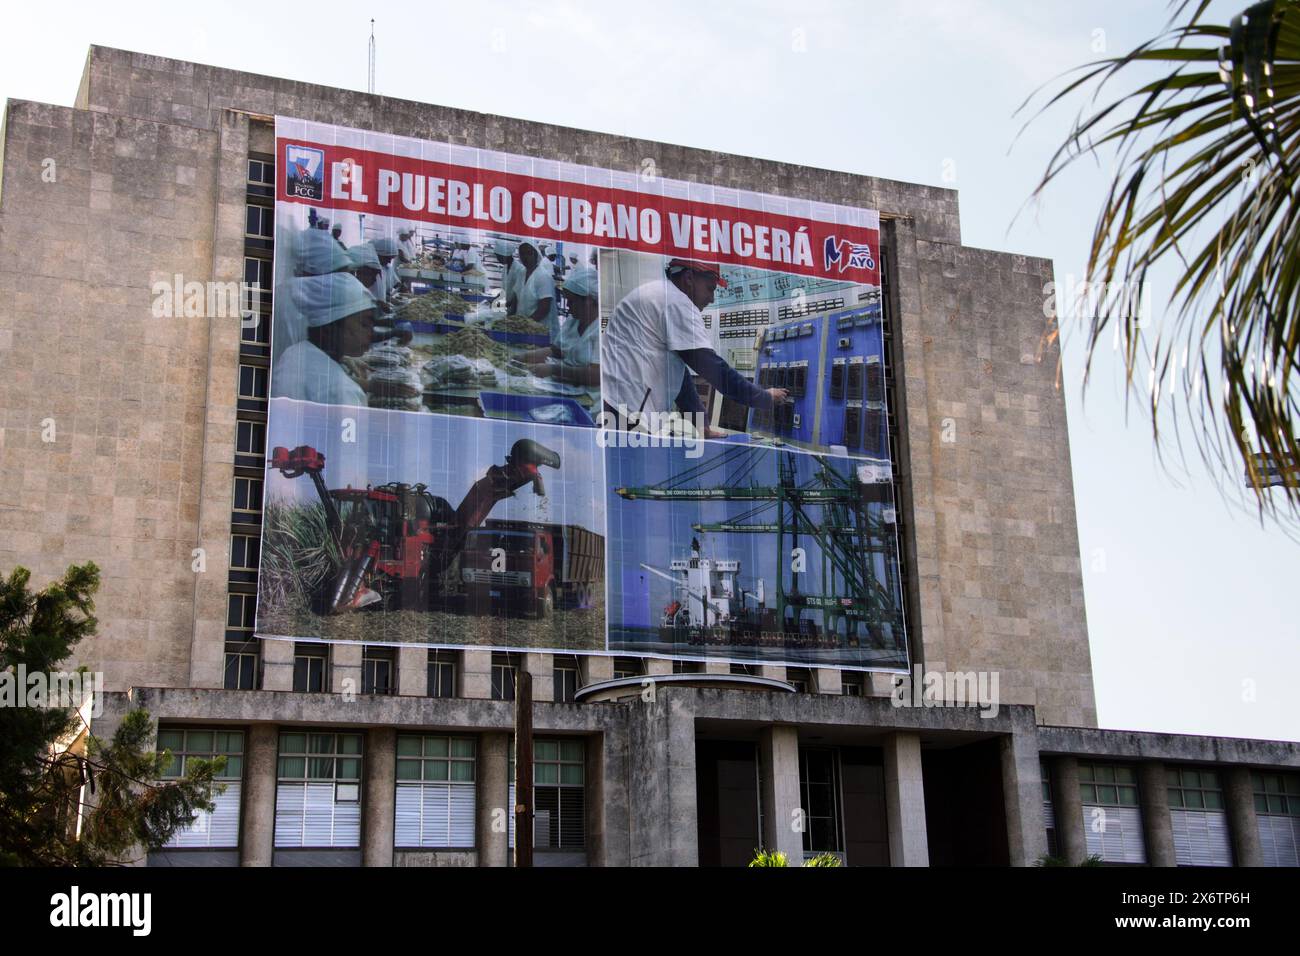 El Pueblo Cubana Vencera (il popolo cubano vincerà). Poster pubblicitario, l'Avana, Cuba, Caraibi. Foto Stock